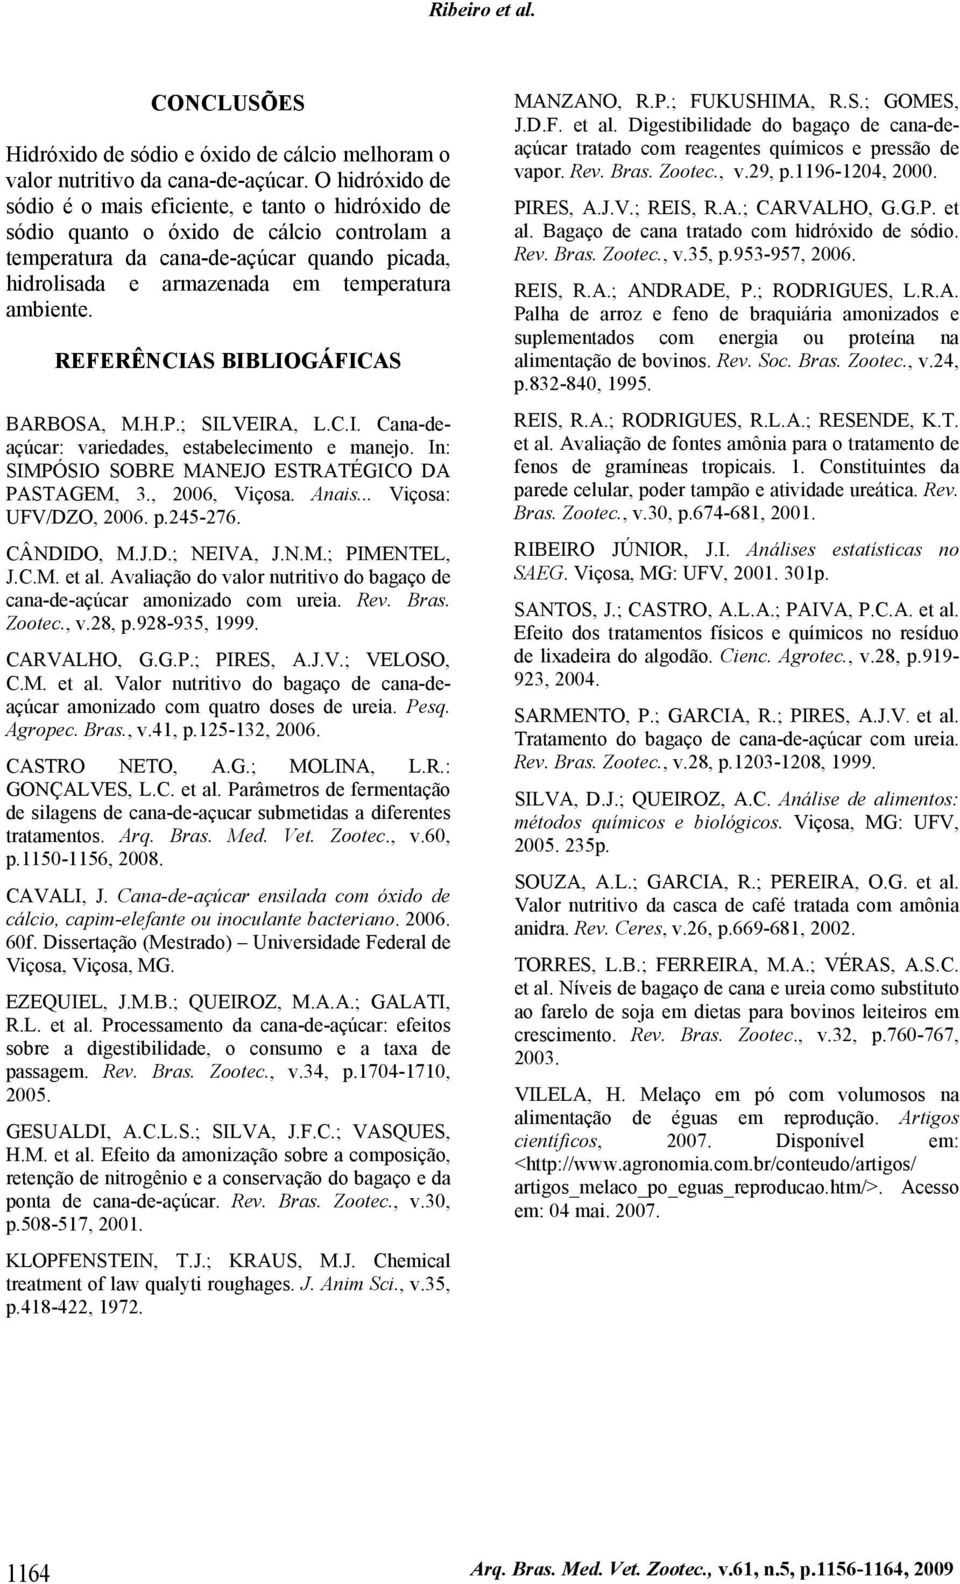 ambiente. REFERÊNCIAS BIBLIOGÁFICAS BARBOSA, M.H.P.; SILVEIRA, L.C.I. Cana-deaçúcar: variedades, estabelecimento e manejo. In: SIMPÓSIO SOBRE MANEJO ESTRATÉGICO DA PASTAGEM, 3., 2006, Viçosa. Anais.